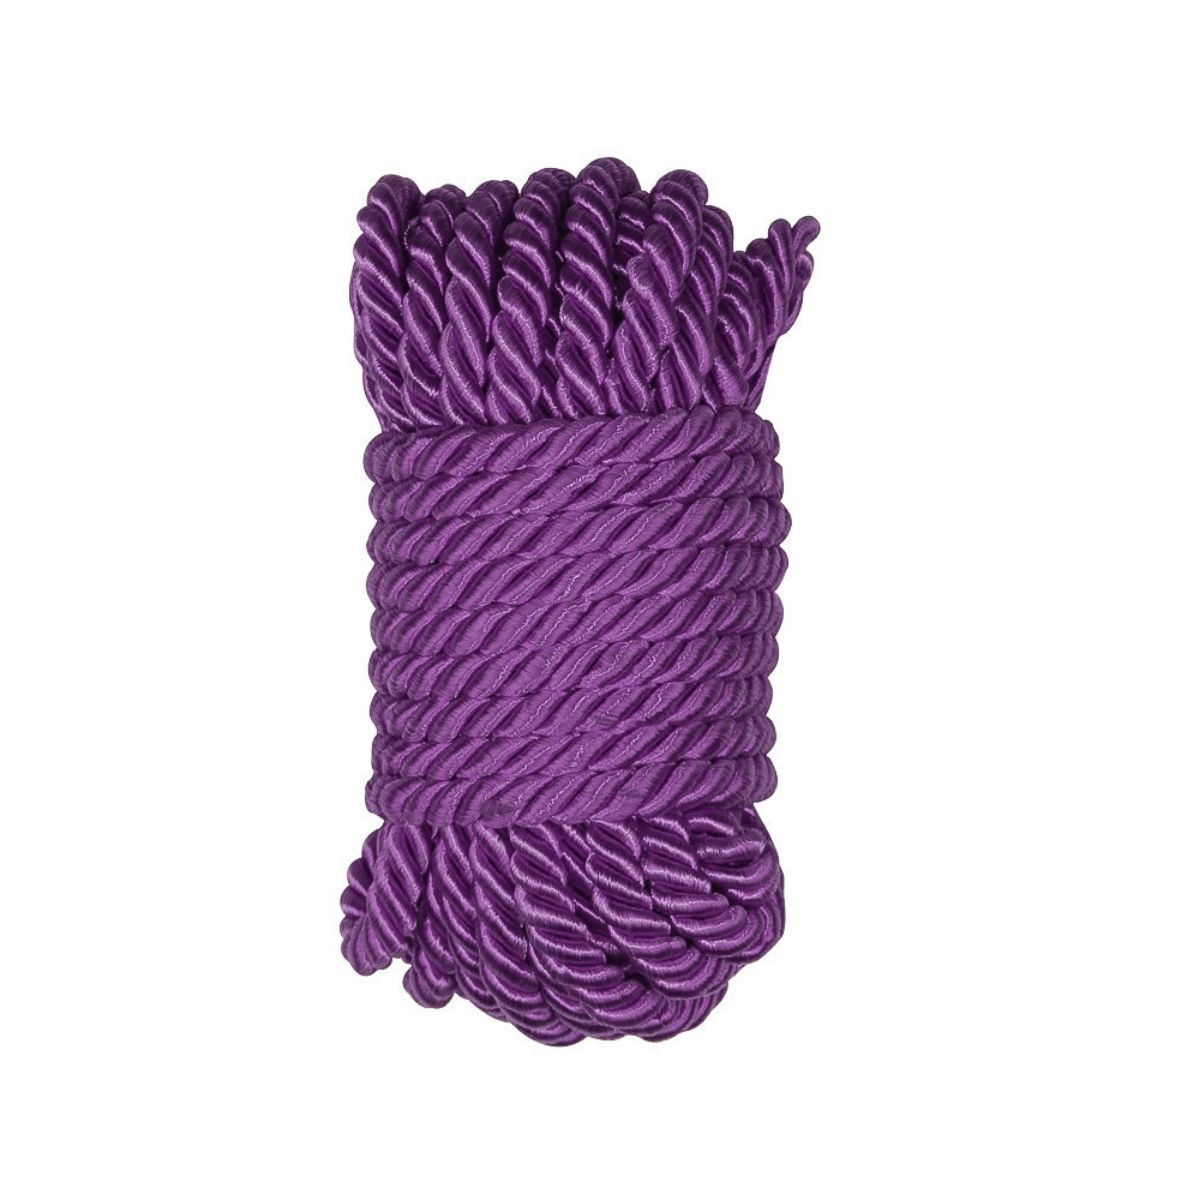 GINN 調教捆綁繩子 10 米 綁縛繩子 紫色 購買